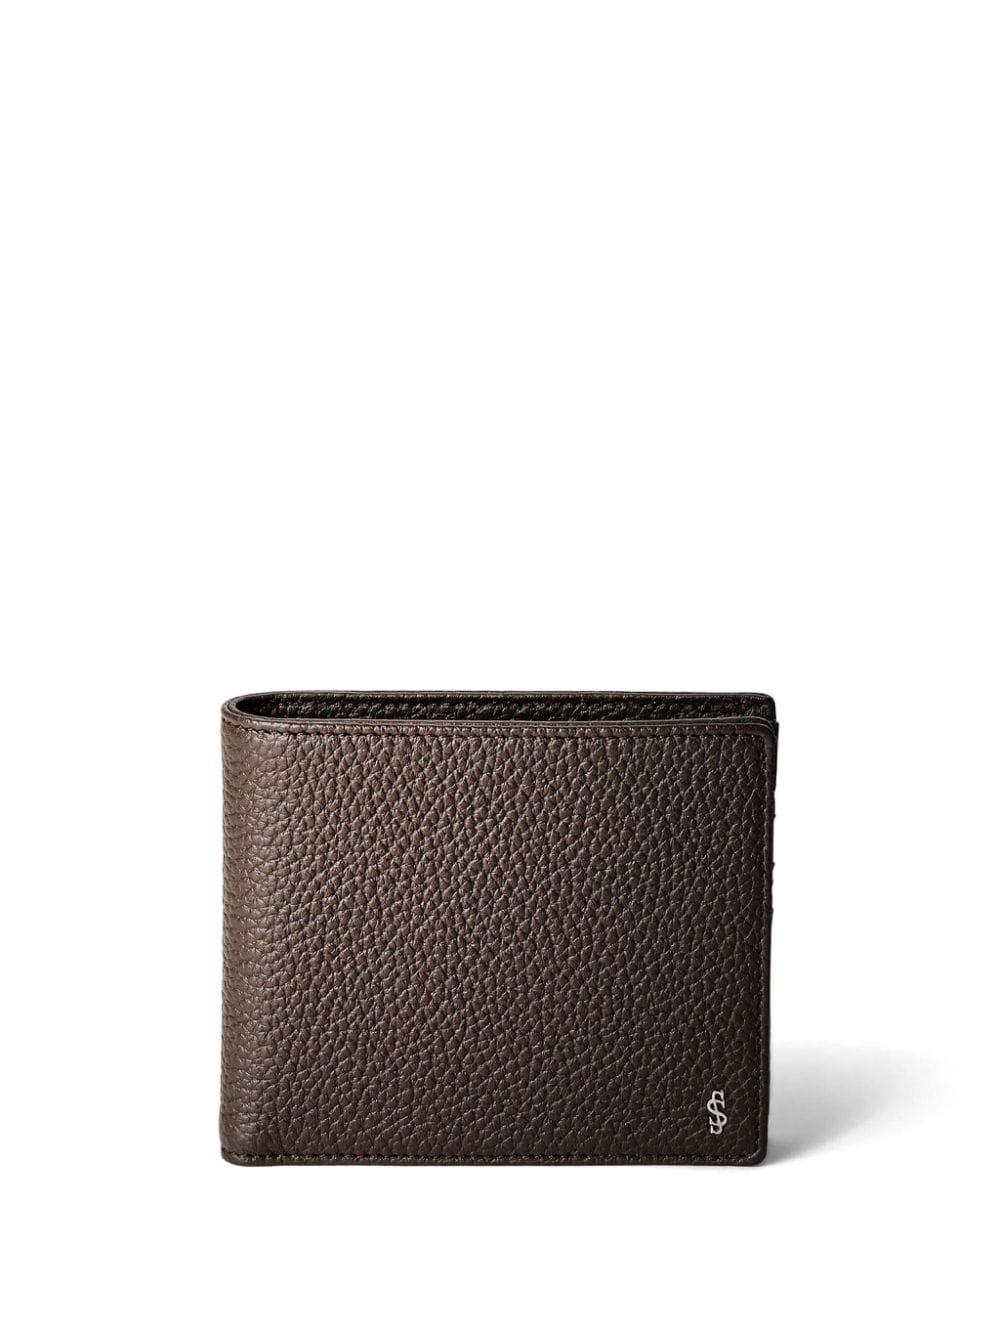 Serapian Cachemire leather billfold wallet - Brown von Serapian